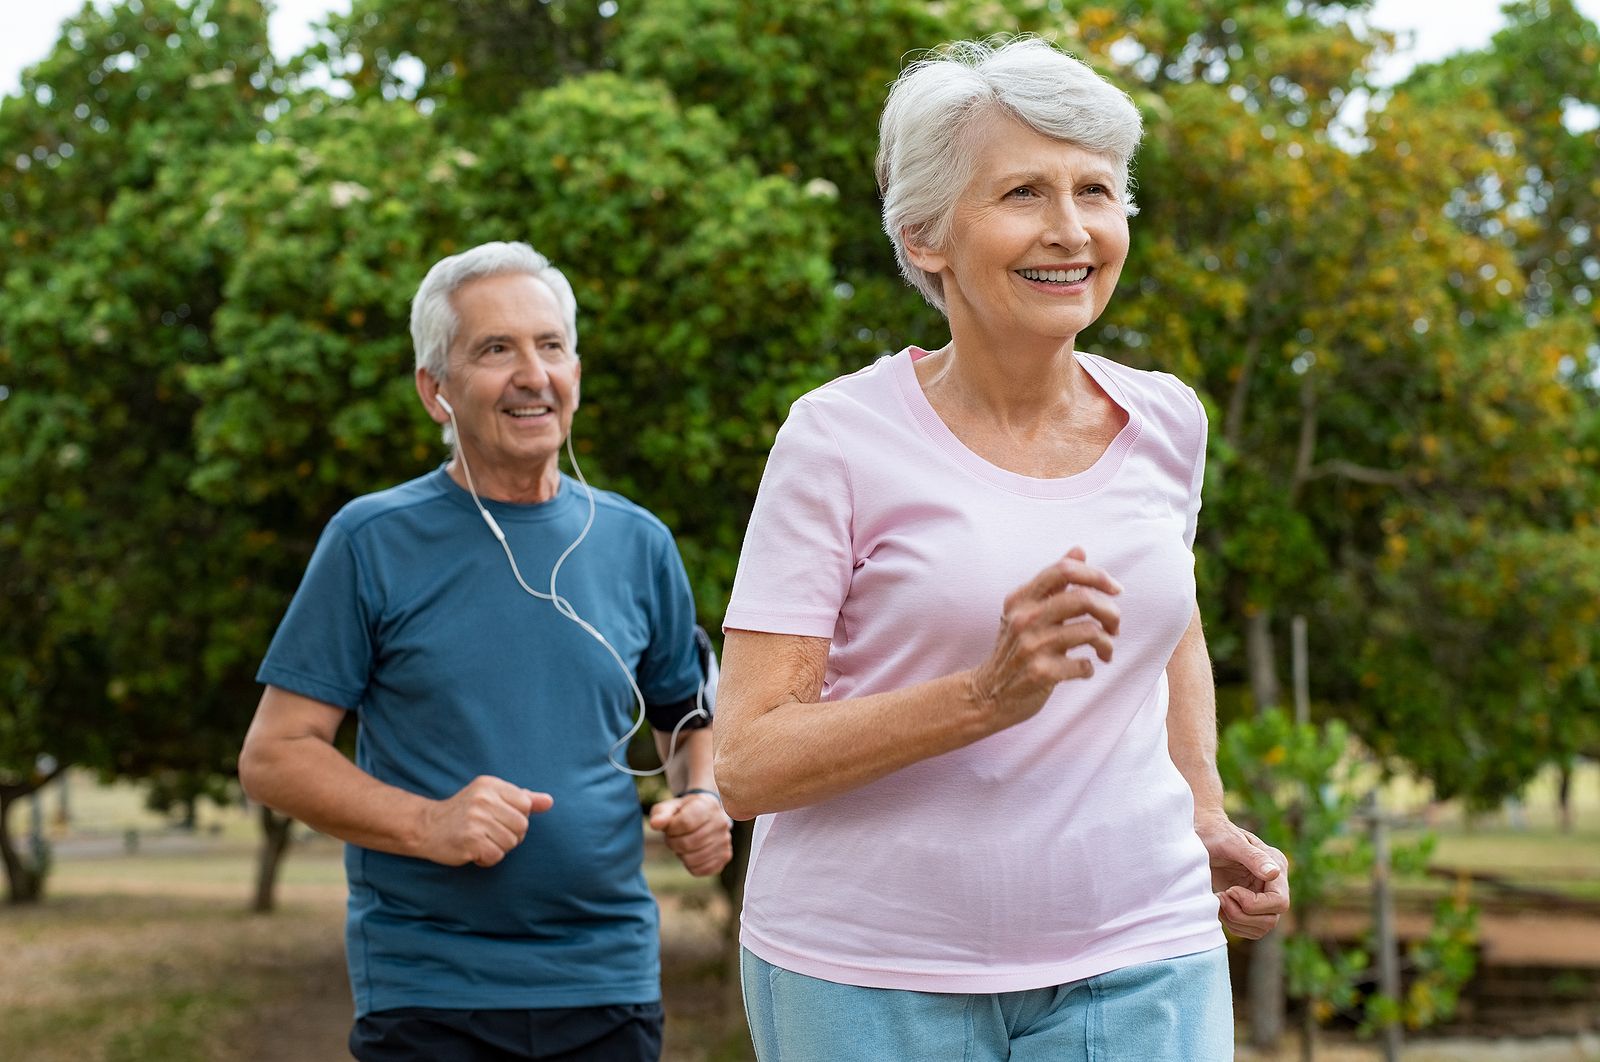 La restricción calórica fortalece los músculos y estimula los genes del envejecimiento saludable